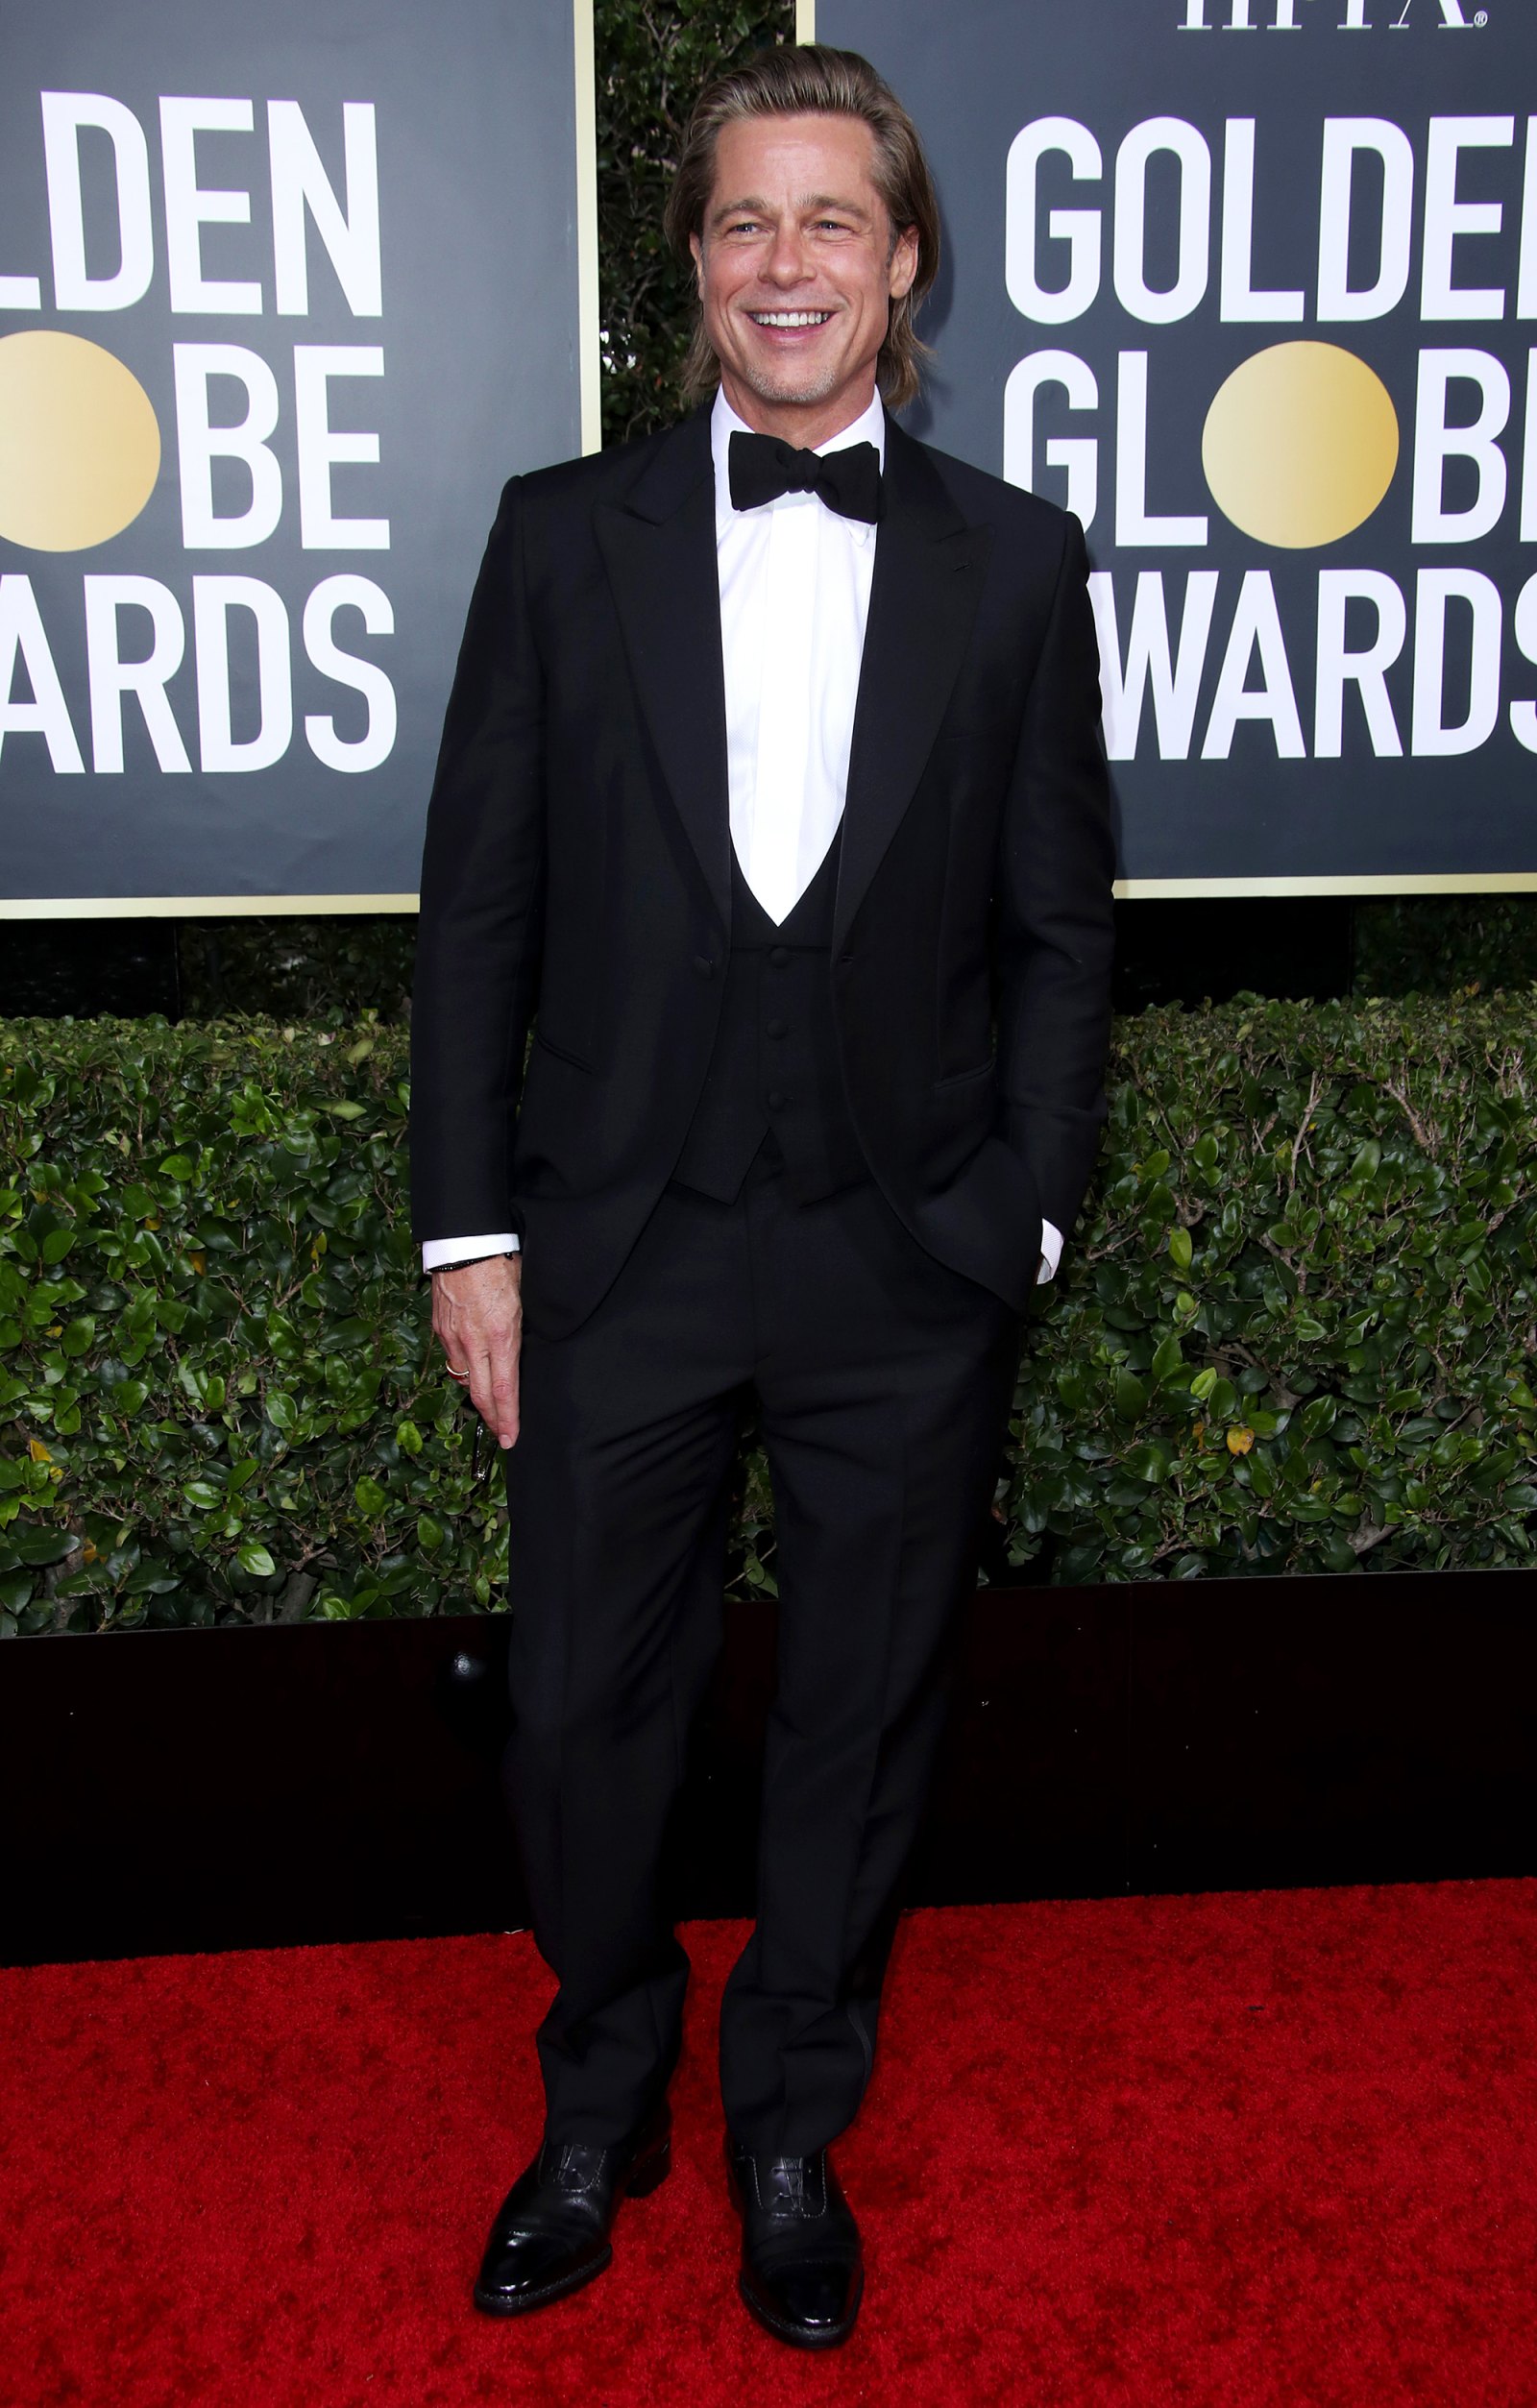 Golden Globes 2020 Hottest Hunks - Brad Pitt